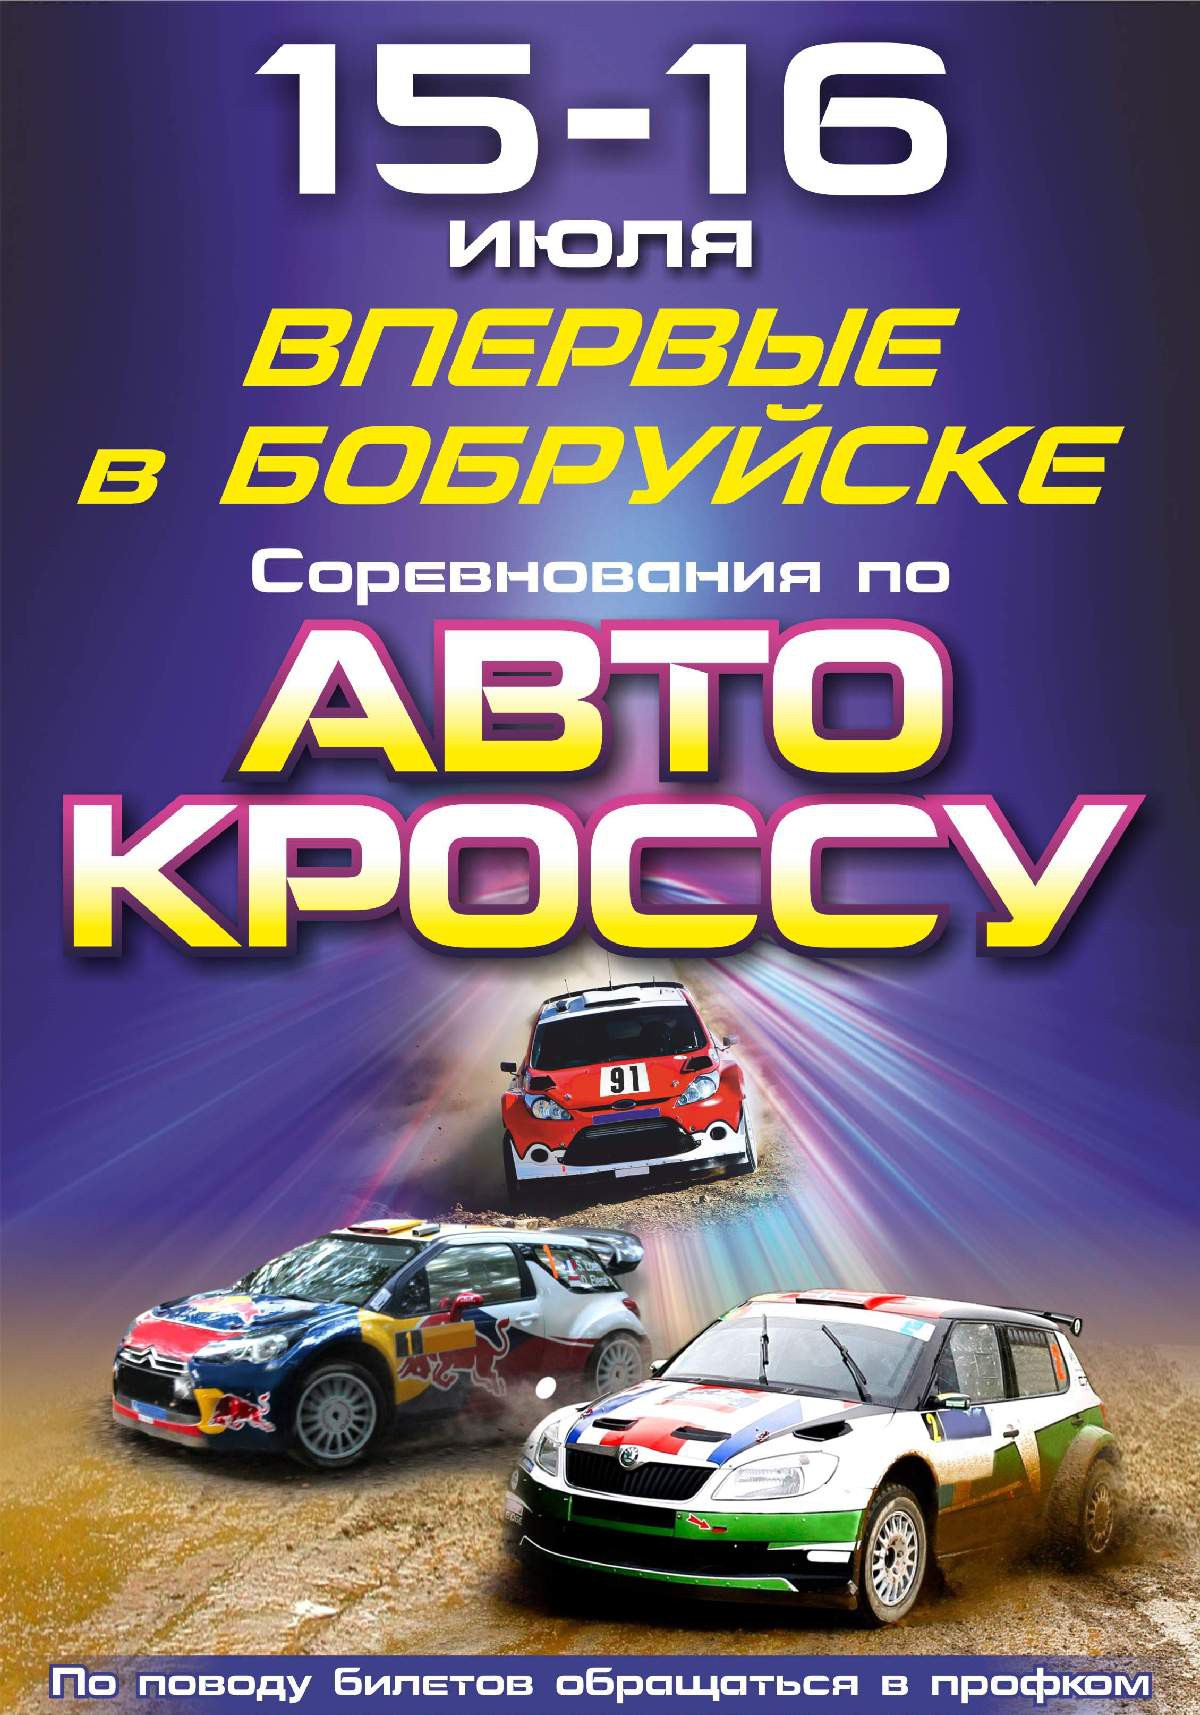 Впервые в Бобруйске пройдут соревнования по автокроссу